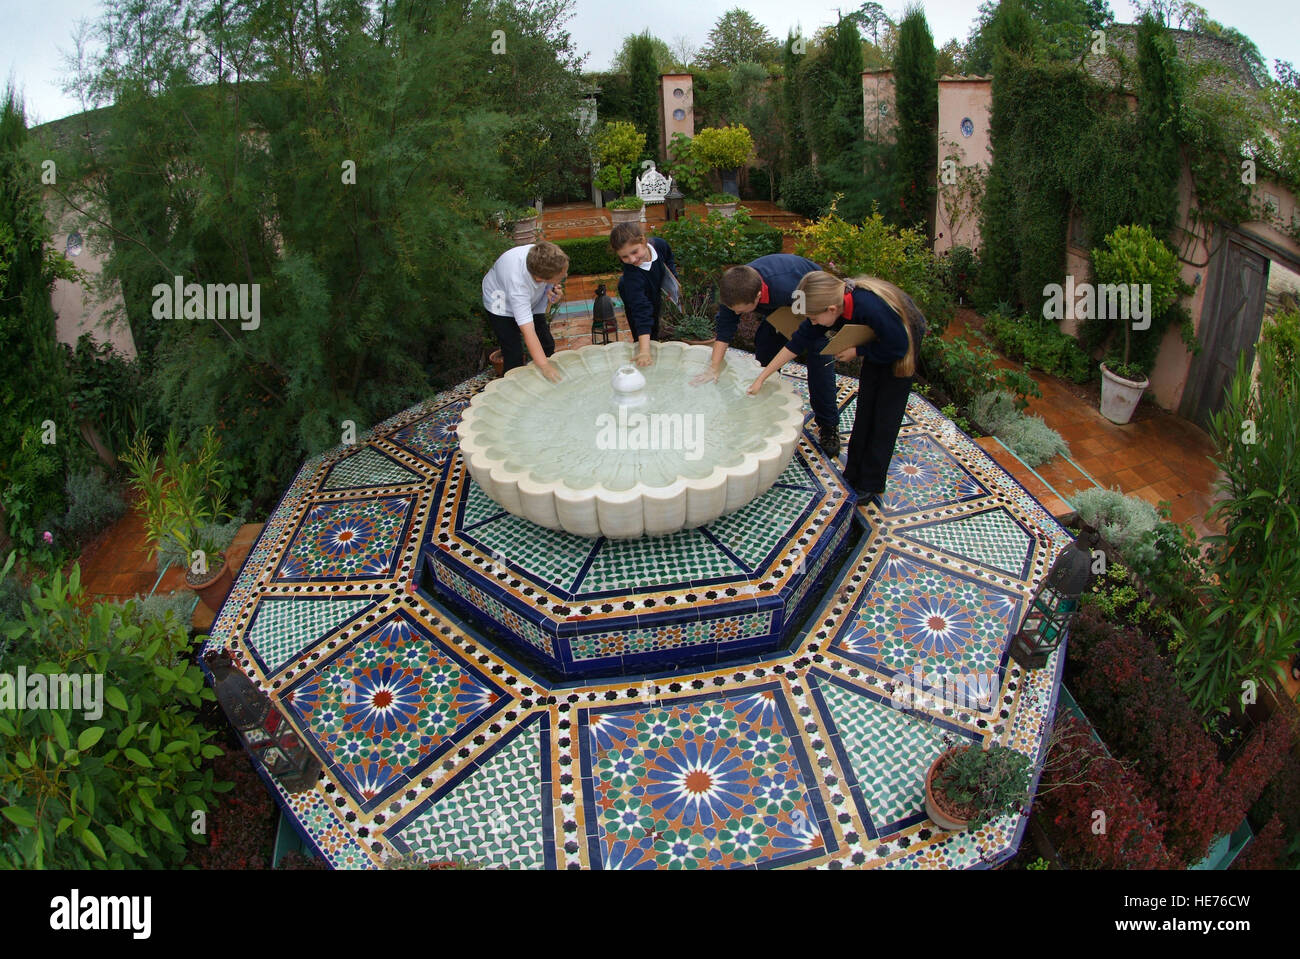 Scolari visitando il giardino islamico a highgrove house, che è stato creato da Sua Altezza Reale il Principe di Galles. Foto Stock